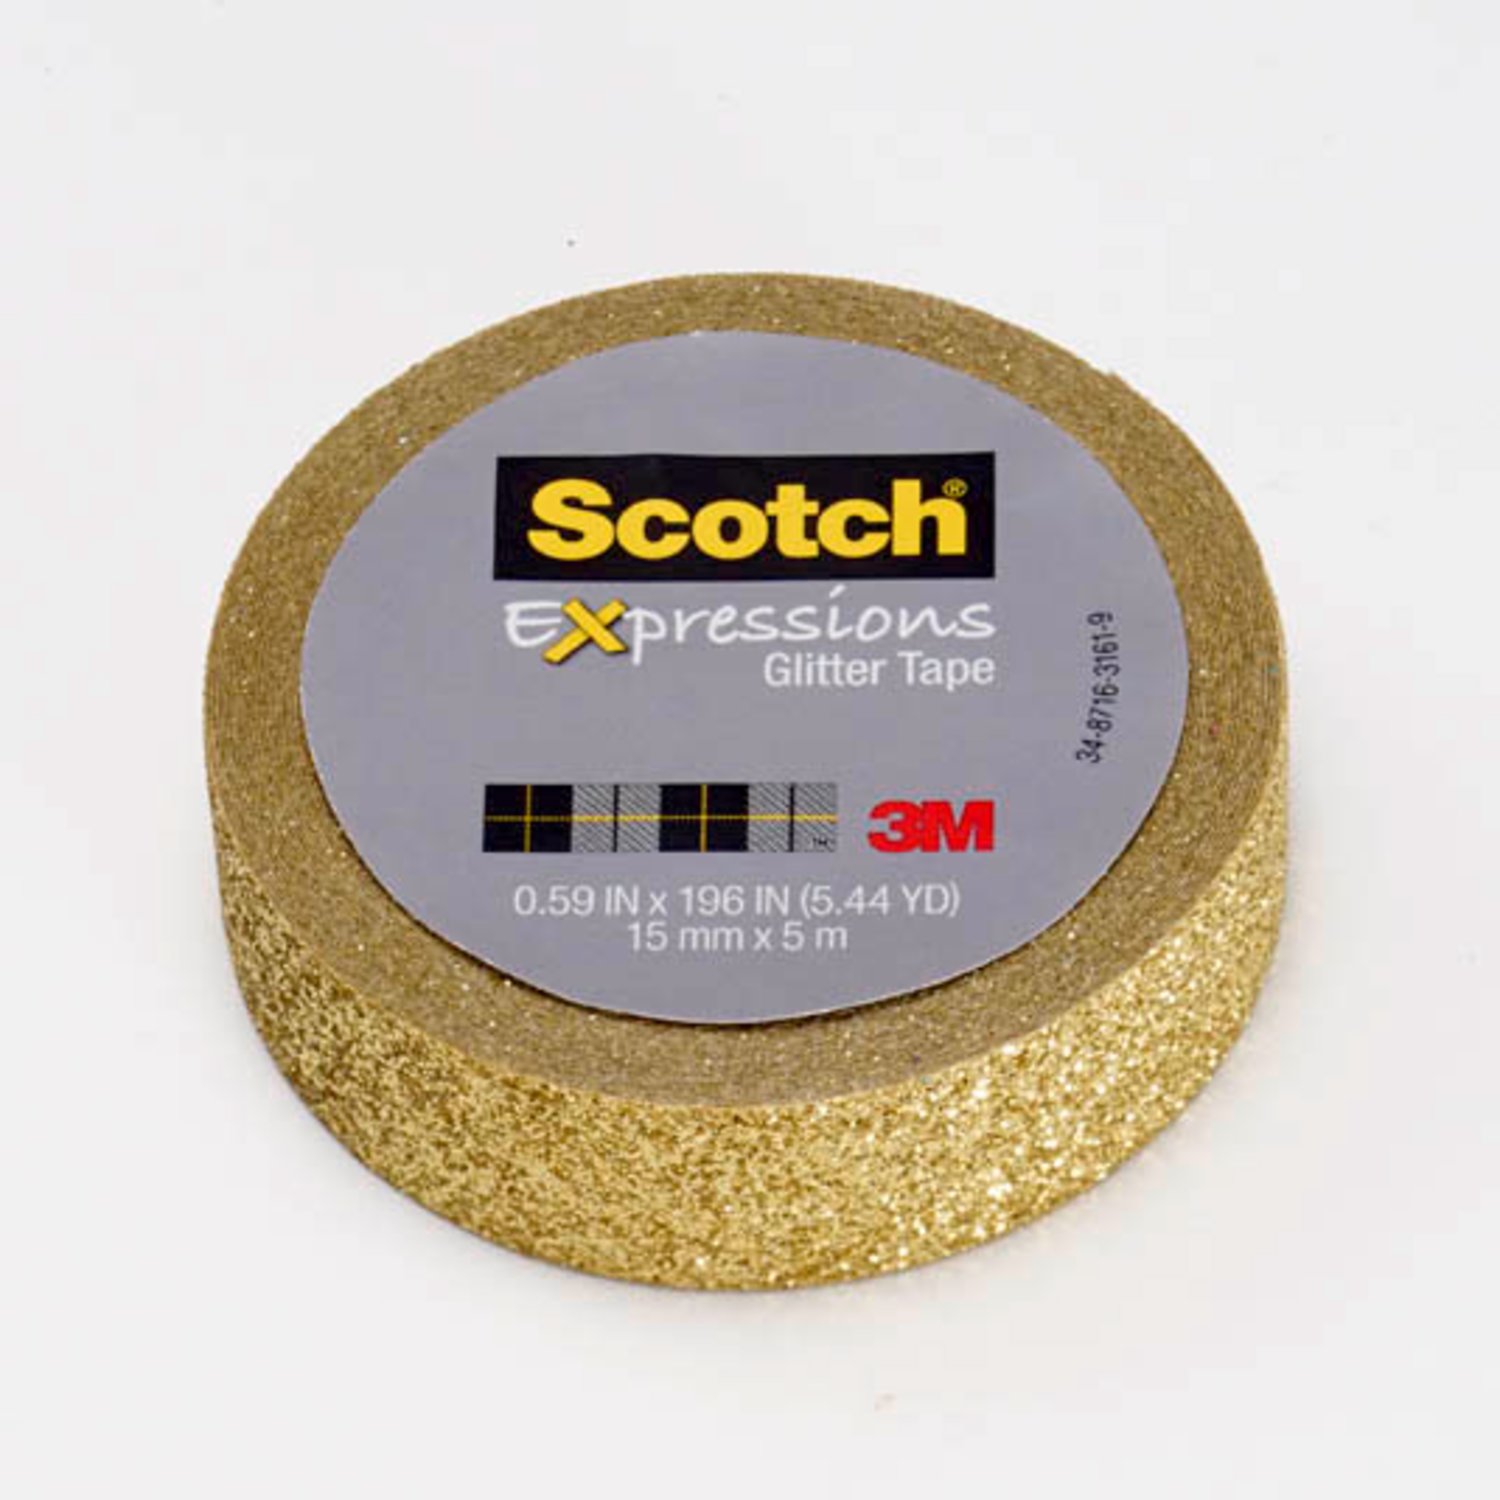 7100143038 - Scotch Expressions Glitter Tape C514-GLD, .59 in x 196 in (15 mm x 5 m)
Gold Glitter